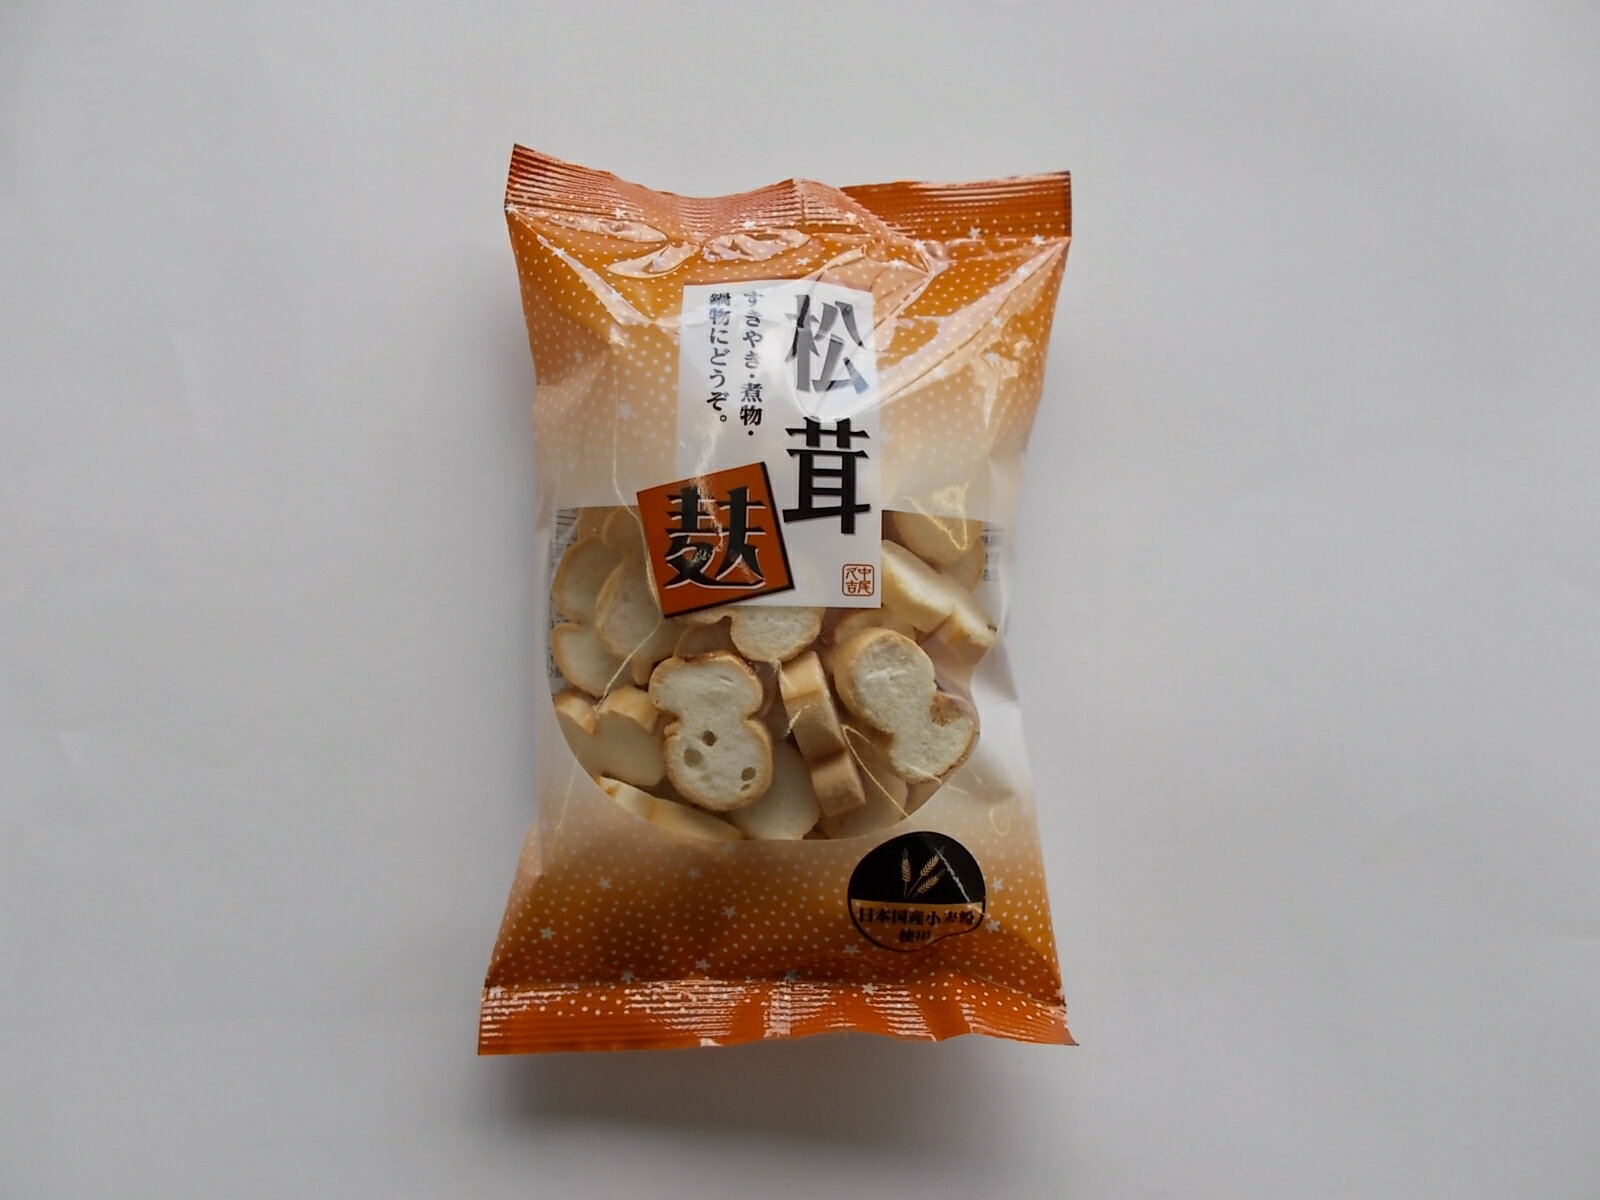 原材料は北海道産小麦を日本で製粉した小麦粉と、輸入小麦から日本で製造した小麦グルテンです。 品質管理のもと小麦粉と小麦グルテンと松茸の香料を入れ、練り合わせ、カラメル色素の生地を上に薄くのばし、松茸の型釜で昔ながらの手作業で一本一本ていねいに焼き薄くスライスした松茸のかおりがする麸です。 おいしさと安全を追求し焼き上げた植物性蛋白質を多く含んだ自然食品です。 品名：焼き麩 原材料名：小麦粉（日本）、グルテン、香料、カラメル色素、膨張剤 内容量：35g 賞味期限：商品に記載 保存方法：直射日光、高温多湿を避け、常温で保管してください。 製造者：株式会社　中尾久吉商店※※商品画像はイメージです。 メーカー都合等により、予告なくパッケージ、仕様（原材料、生産国、色、形状、サイズ等）の変更がある場合がございます。 あらかじめご了承ください。